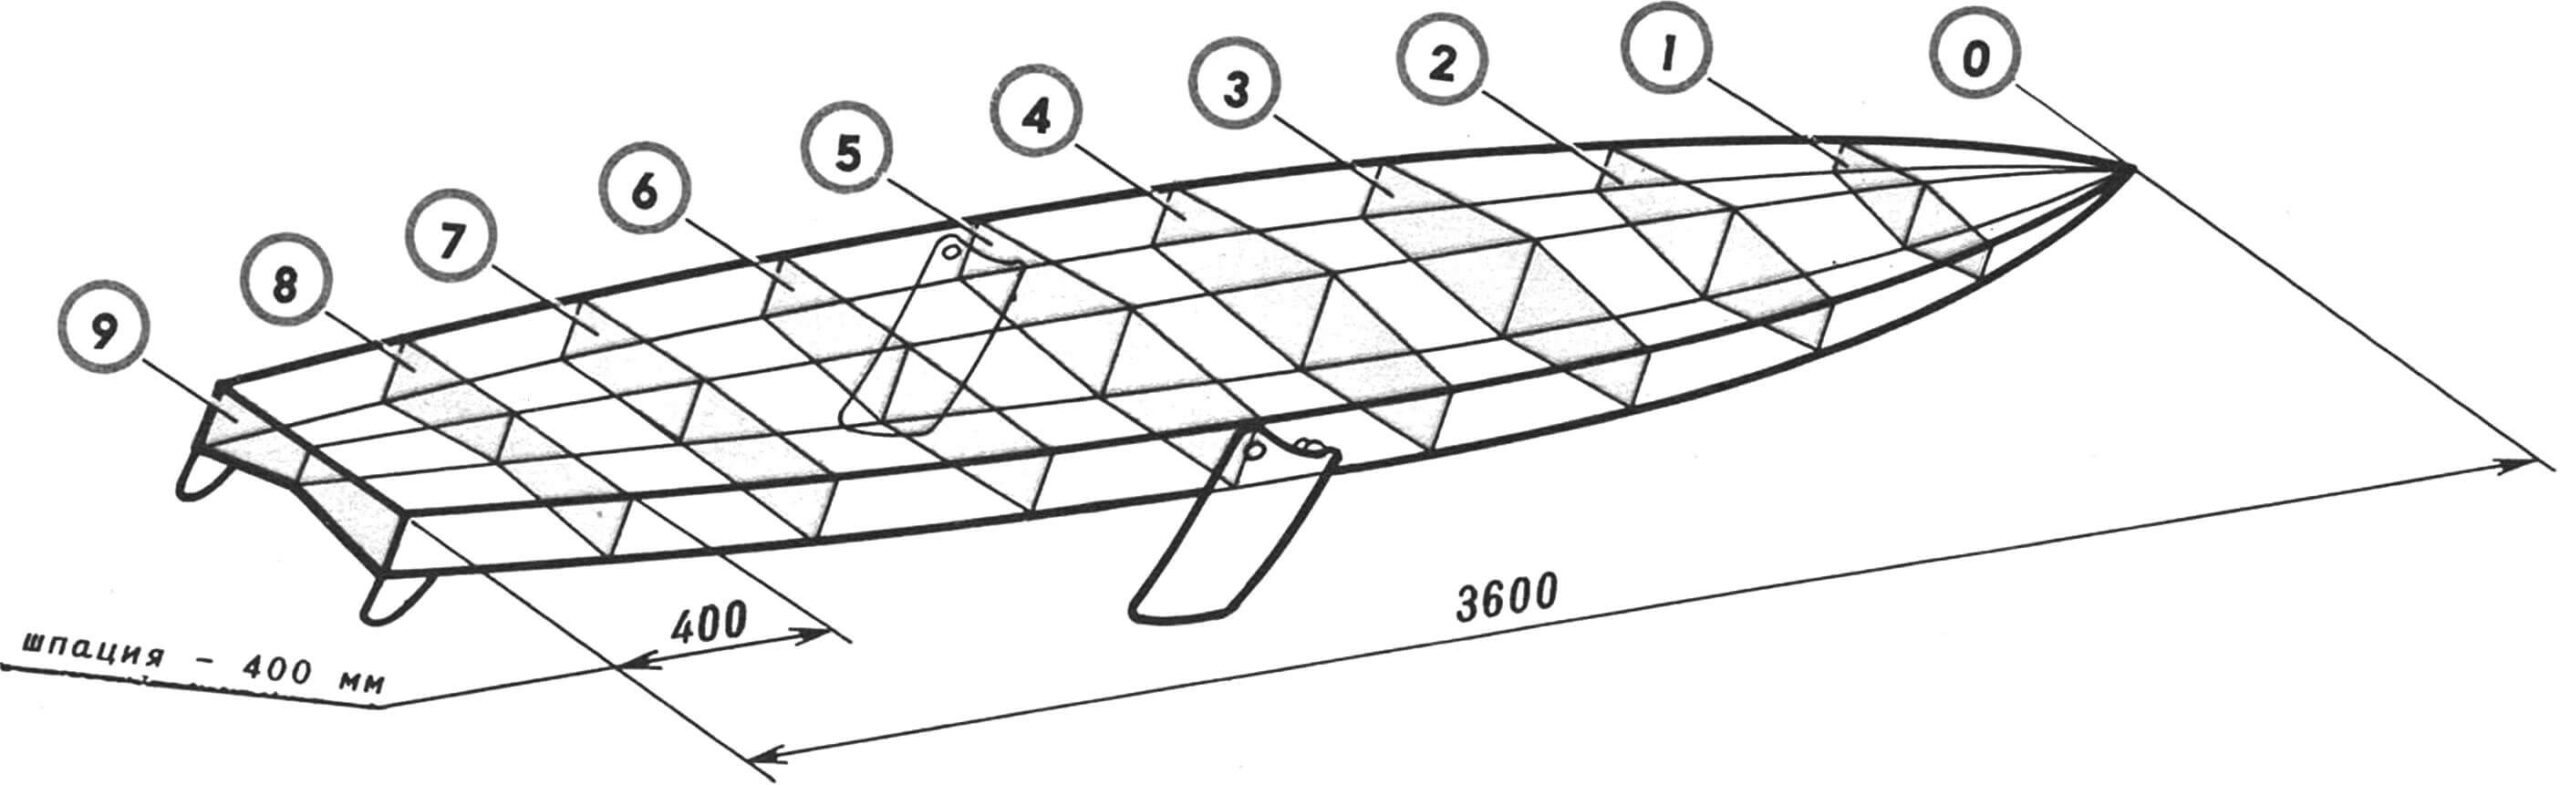 Рис. 2. Схема построения корпуса парусной доски.